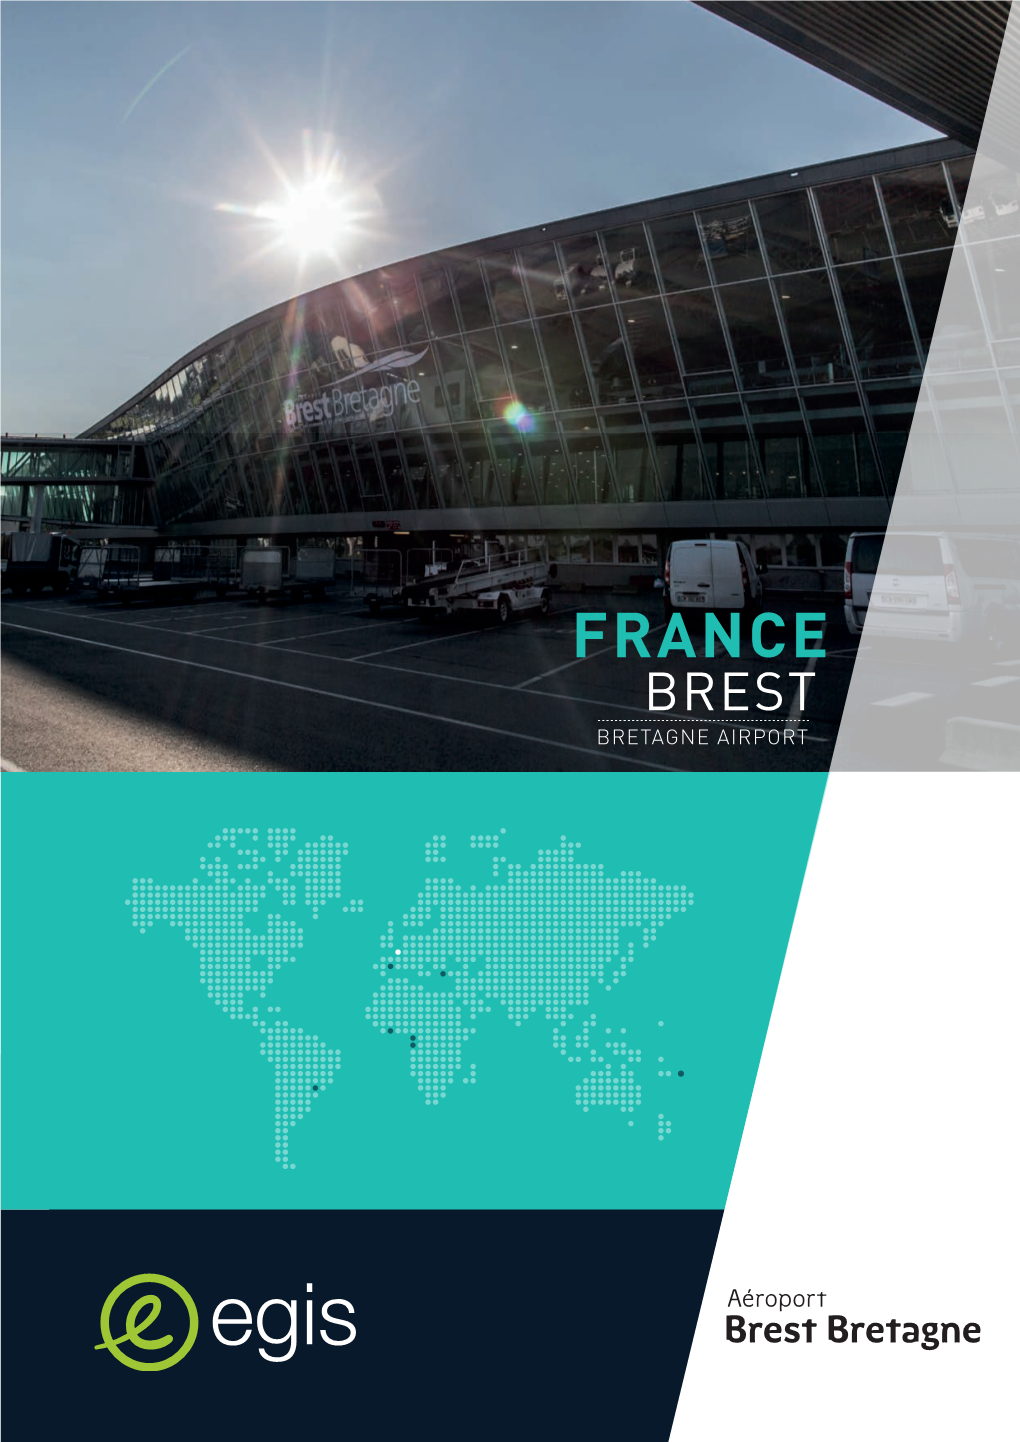 France Brest Bretagne Airport